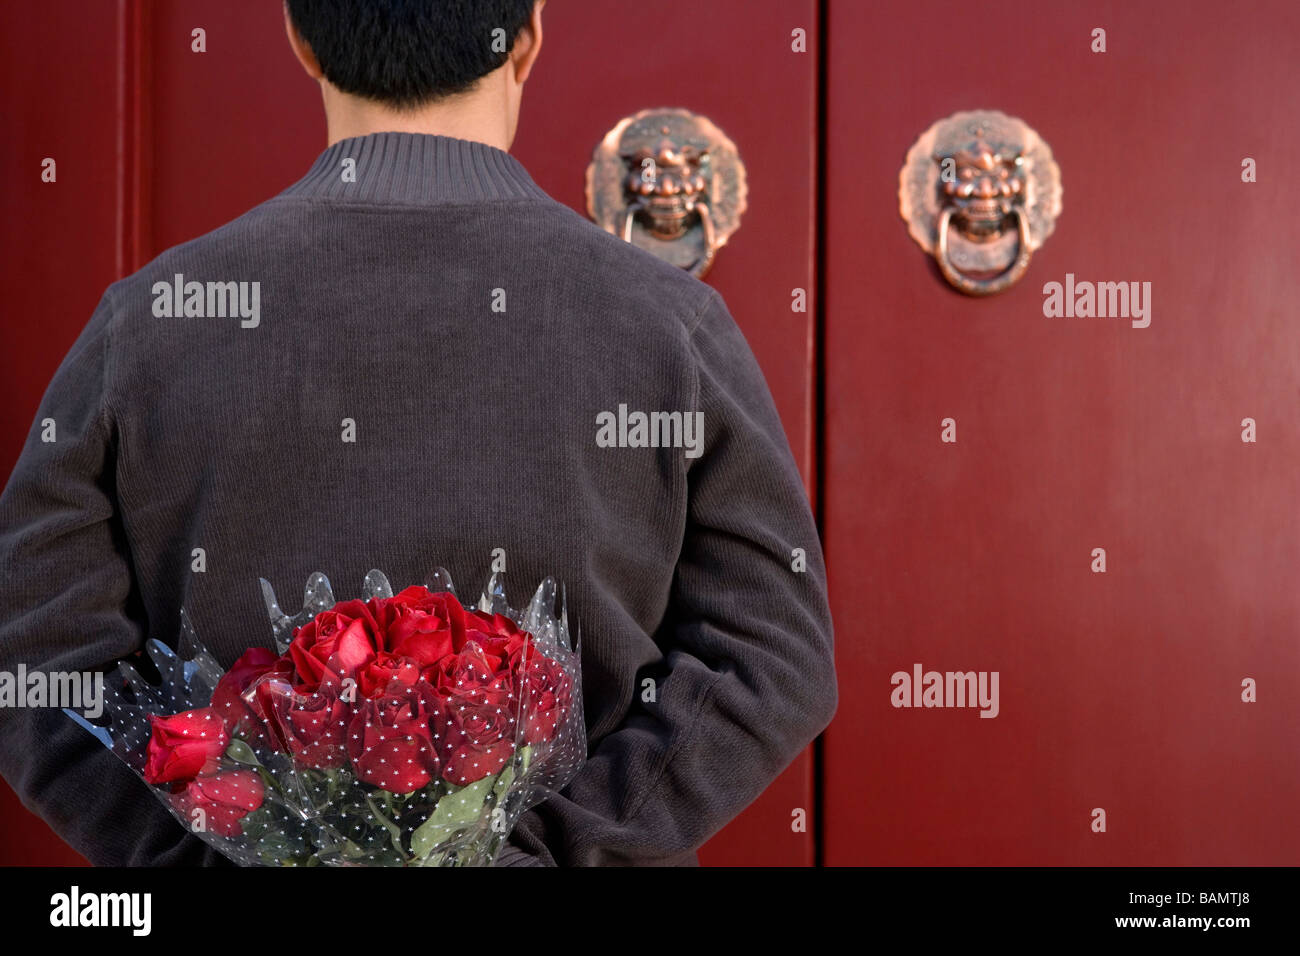 Giovane uomo in attesa davanti alla porta di casa con un mazzo di rose dietro la schiena Foto Stock